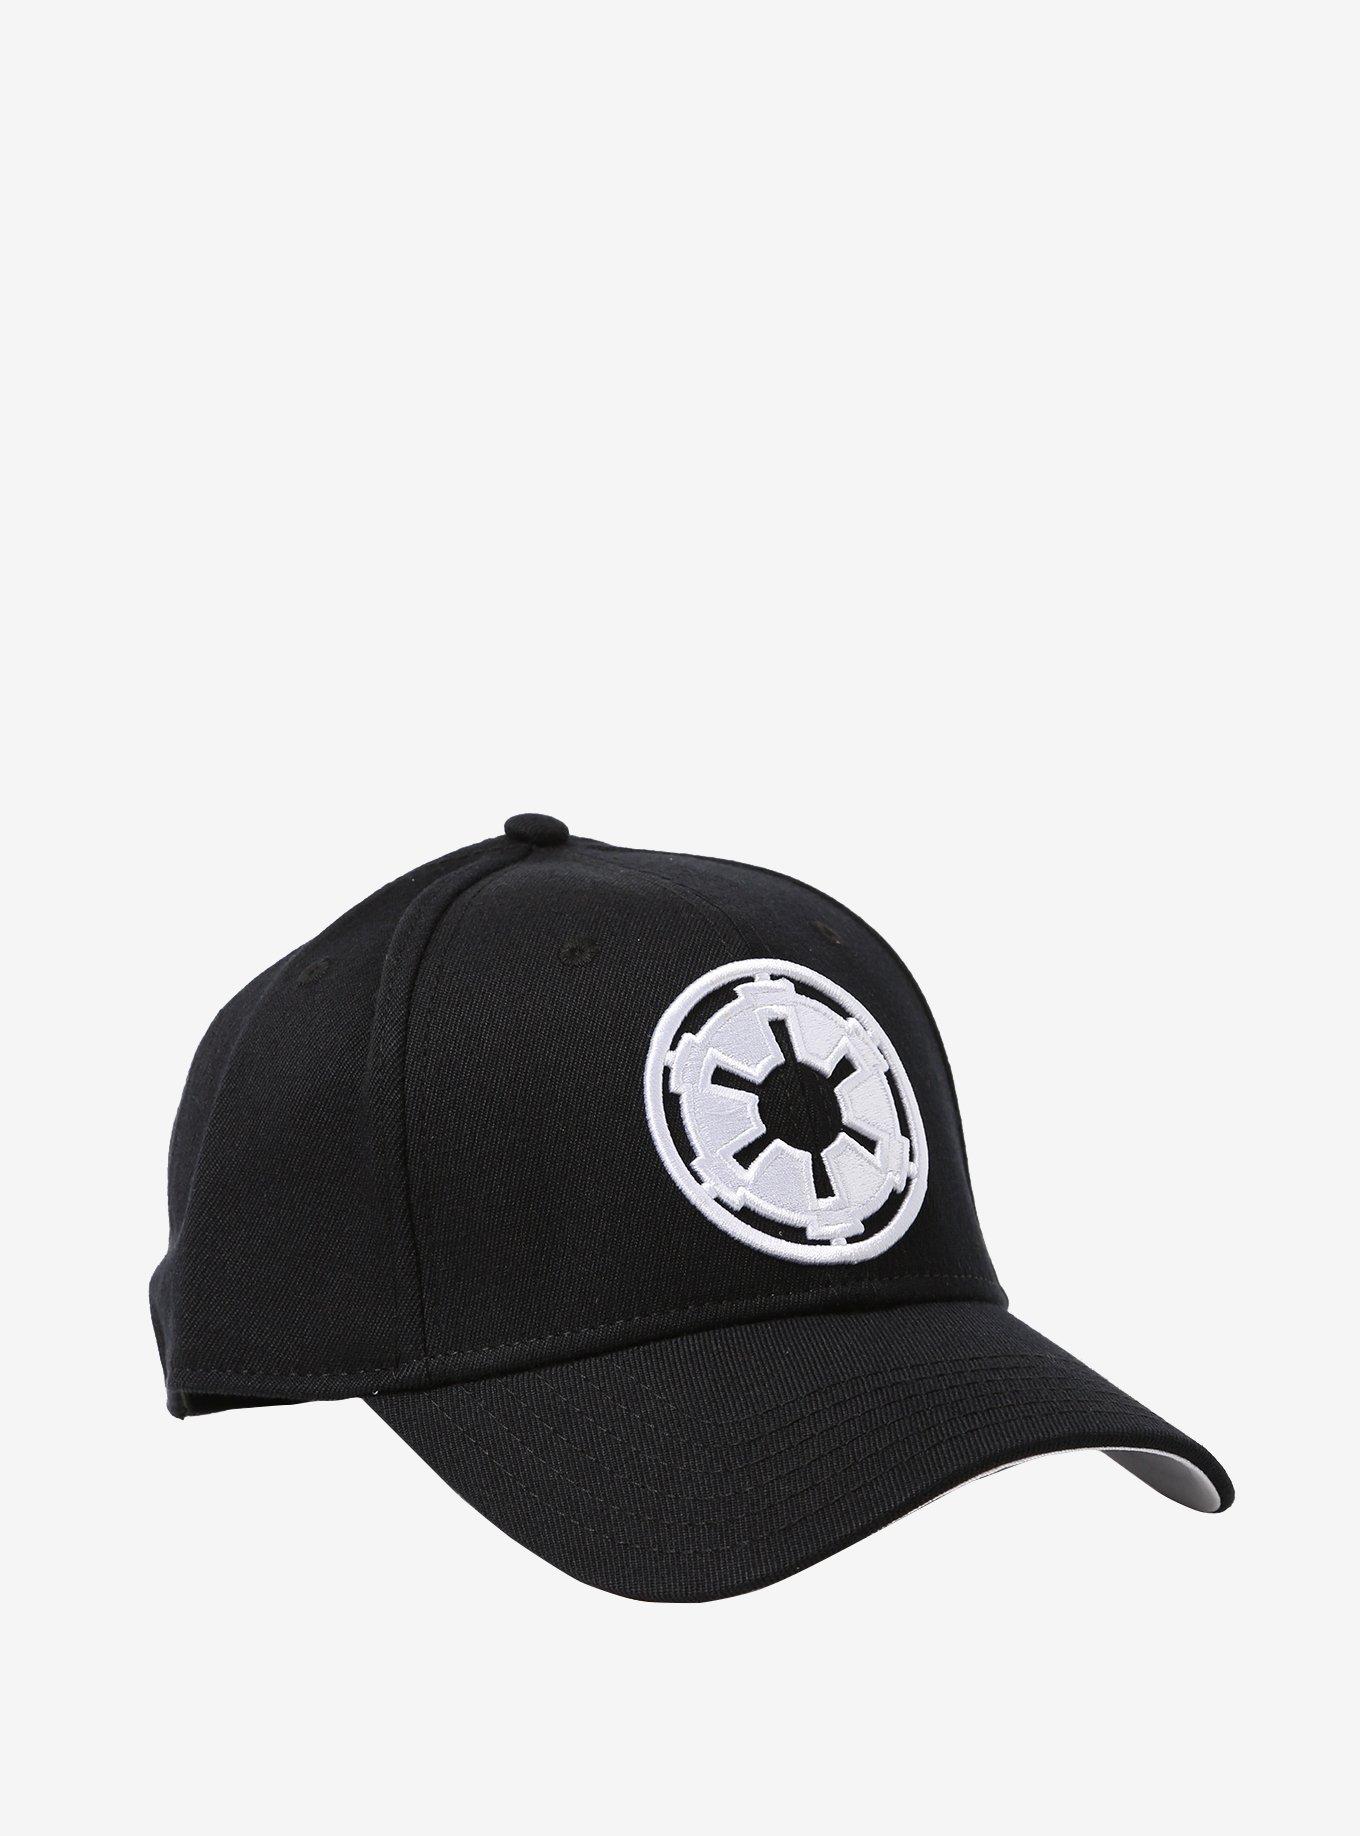 Star Wars Galactic Empire Flex Hat, , hi-res